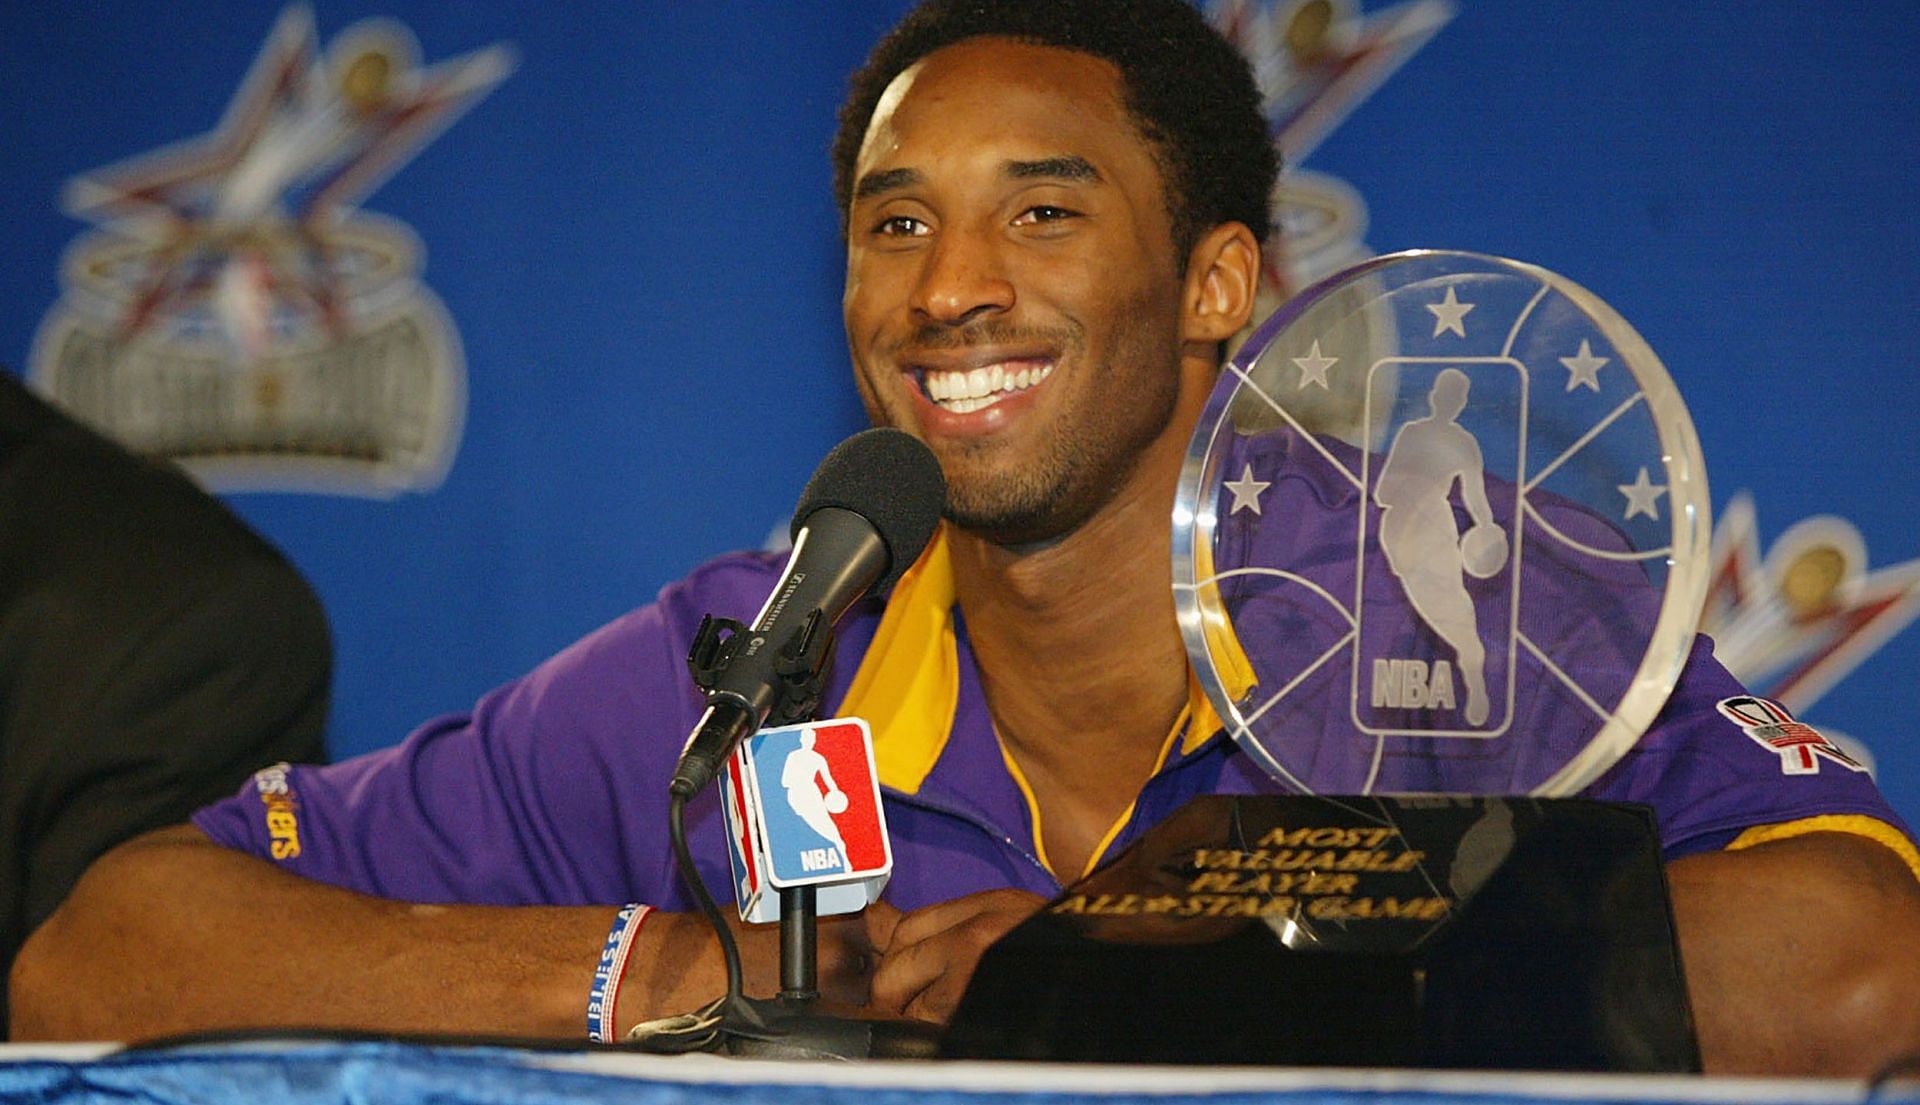 Kobe Bryant celebrates his All-Star Game MVP award in 2002.